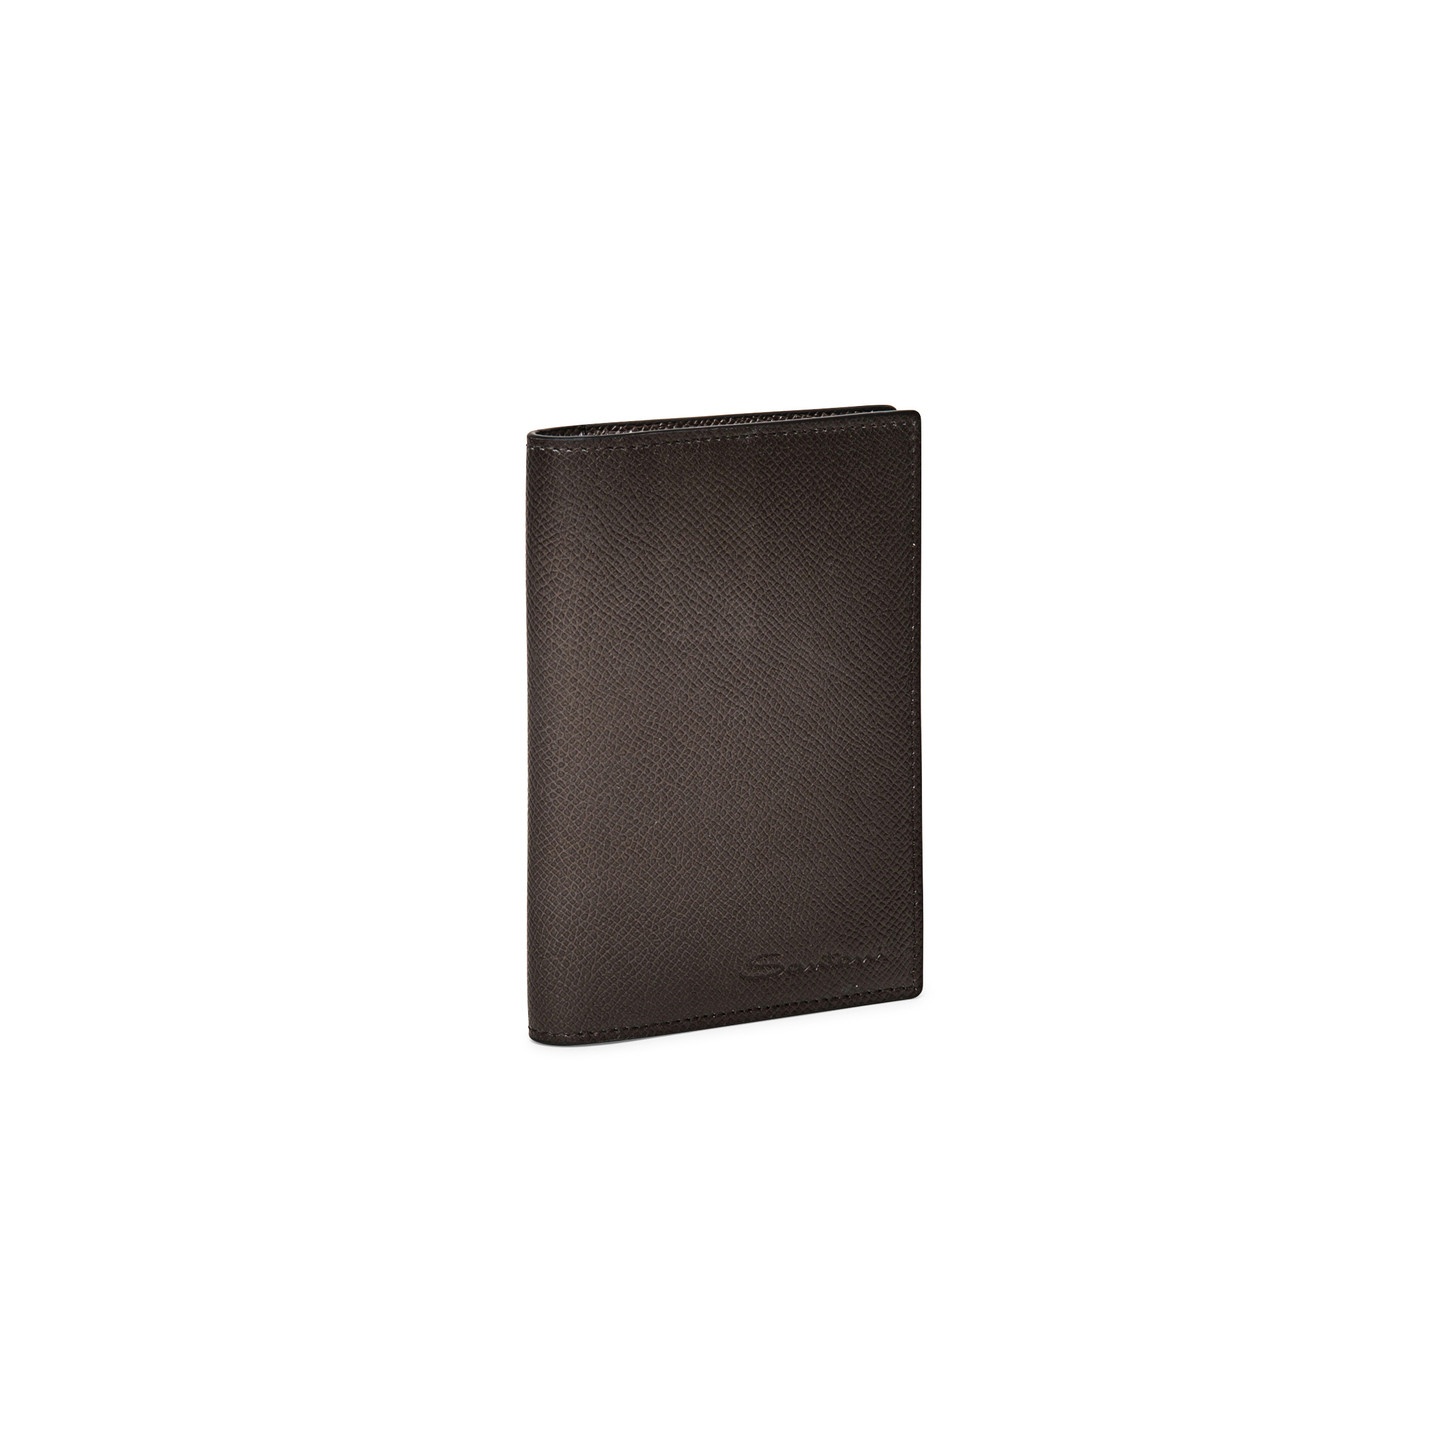 Beige saffiano leather passport case - 5